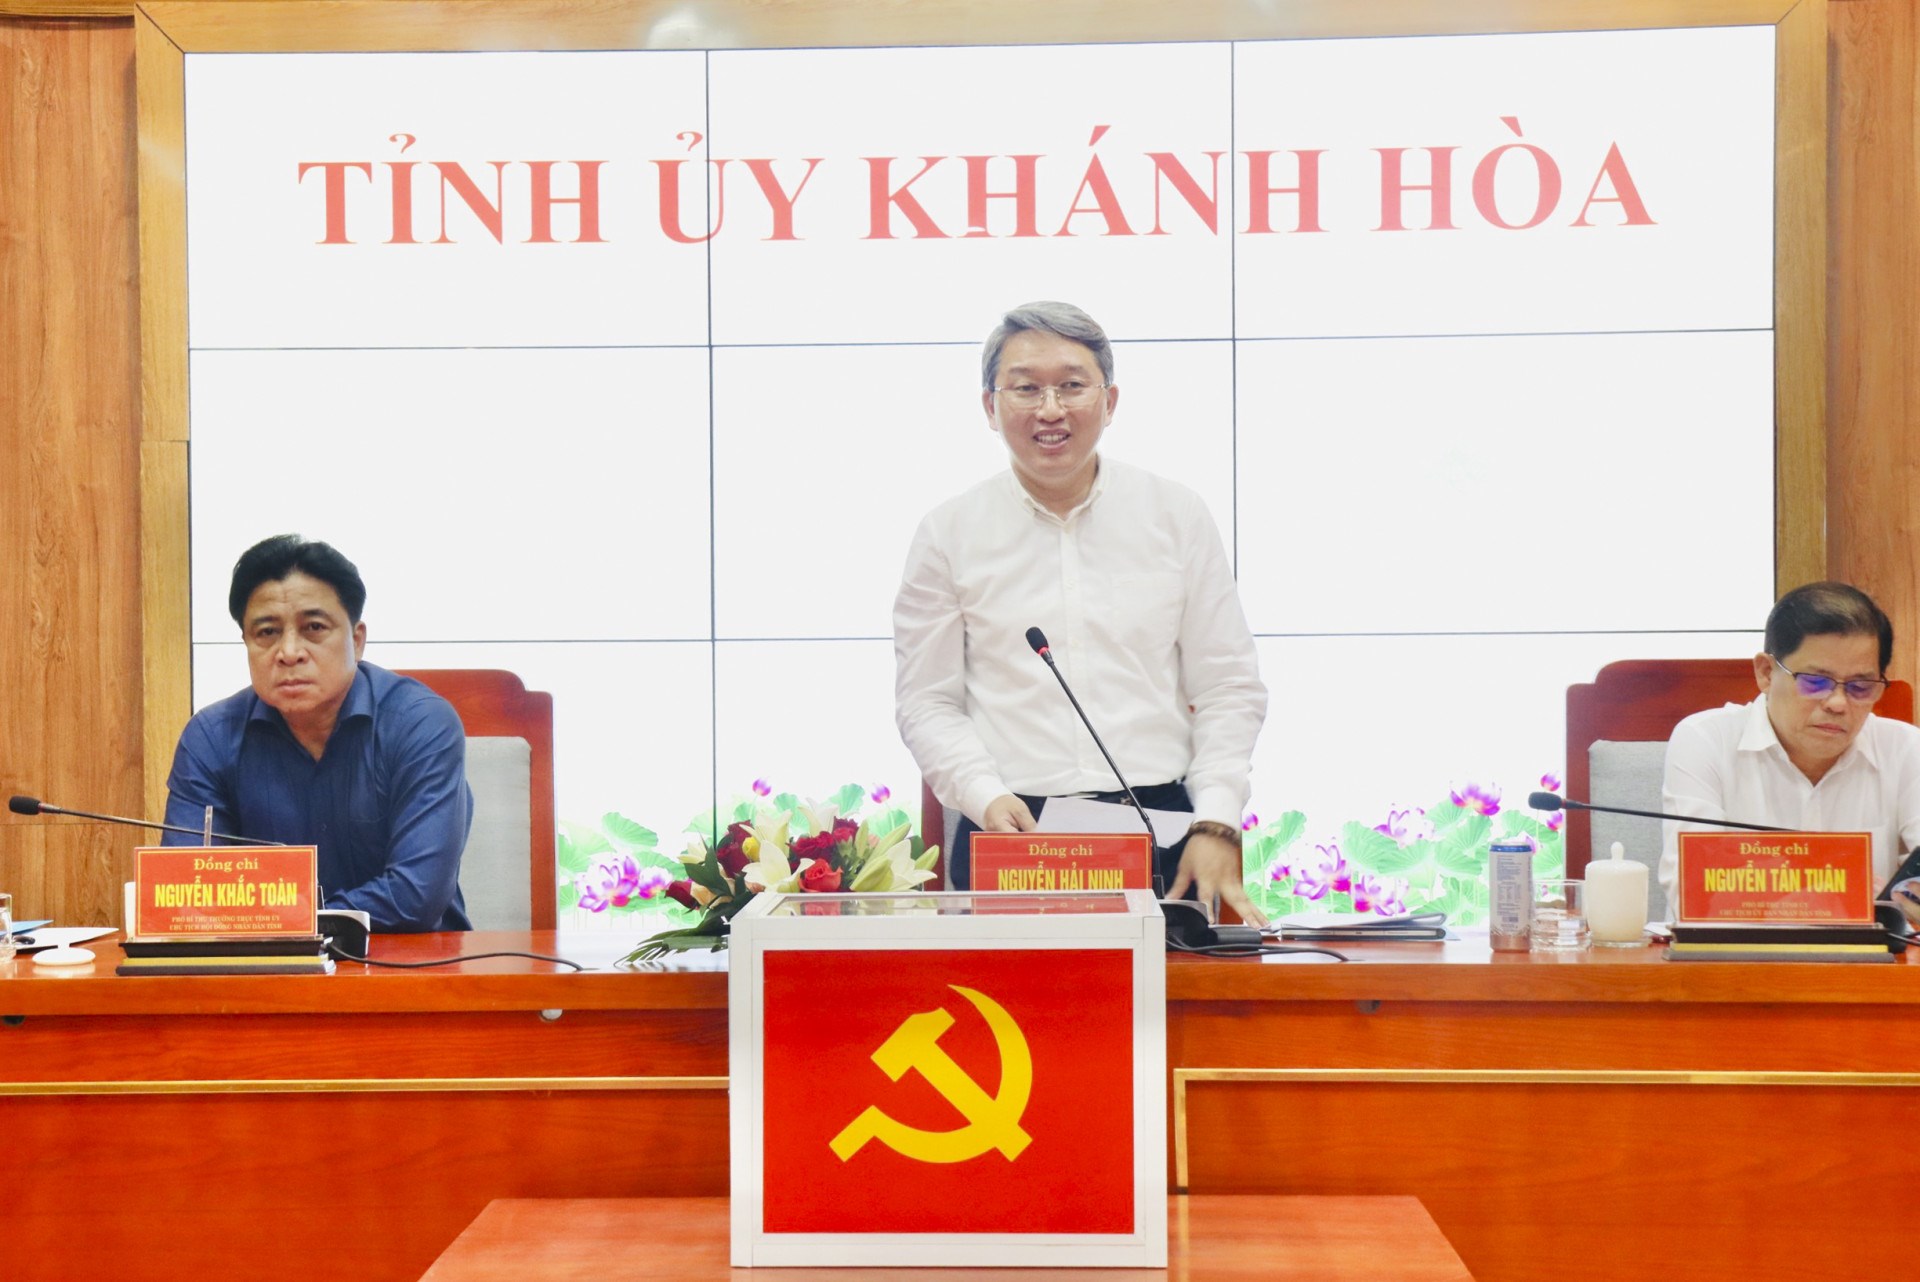 Tỉnh ủy Khánh Hòa tổ chức hội nghị về công tác cán bộ